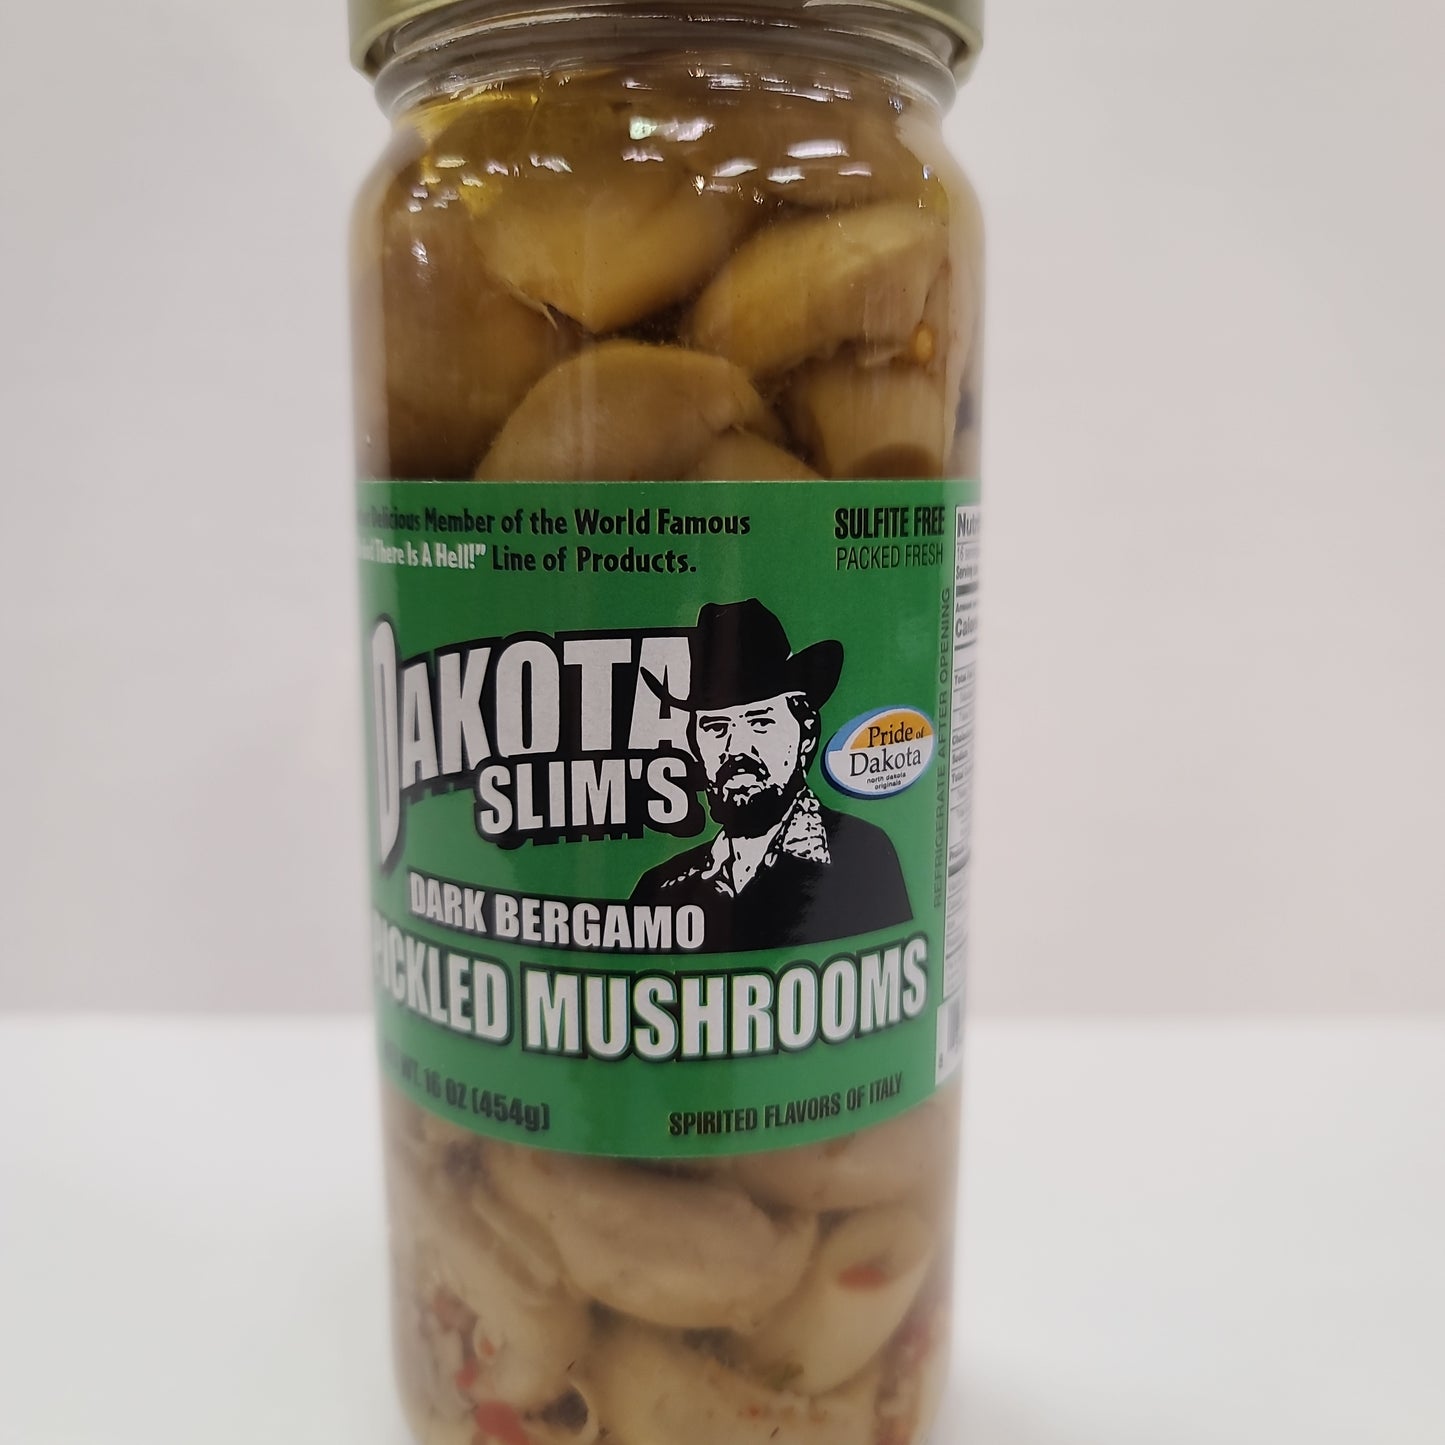 Dakota Slim's Dark Bergamo Pickled Mushrooms 16oz